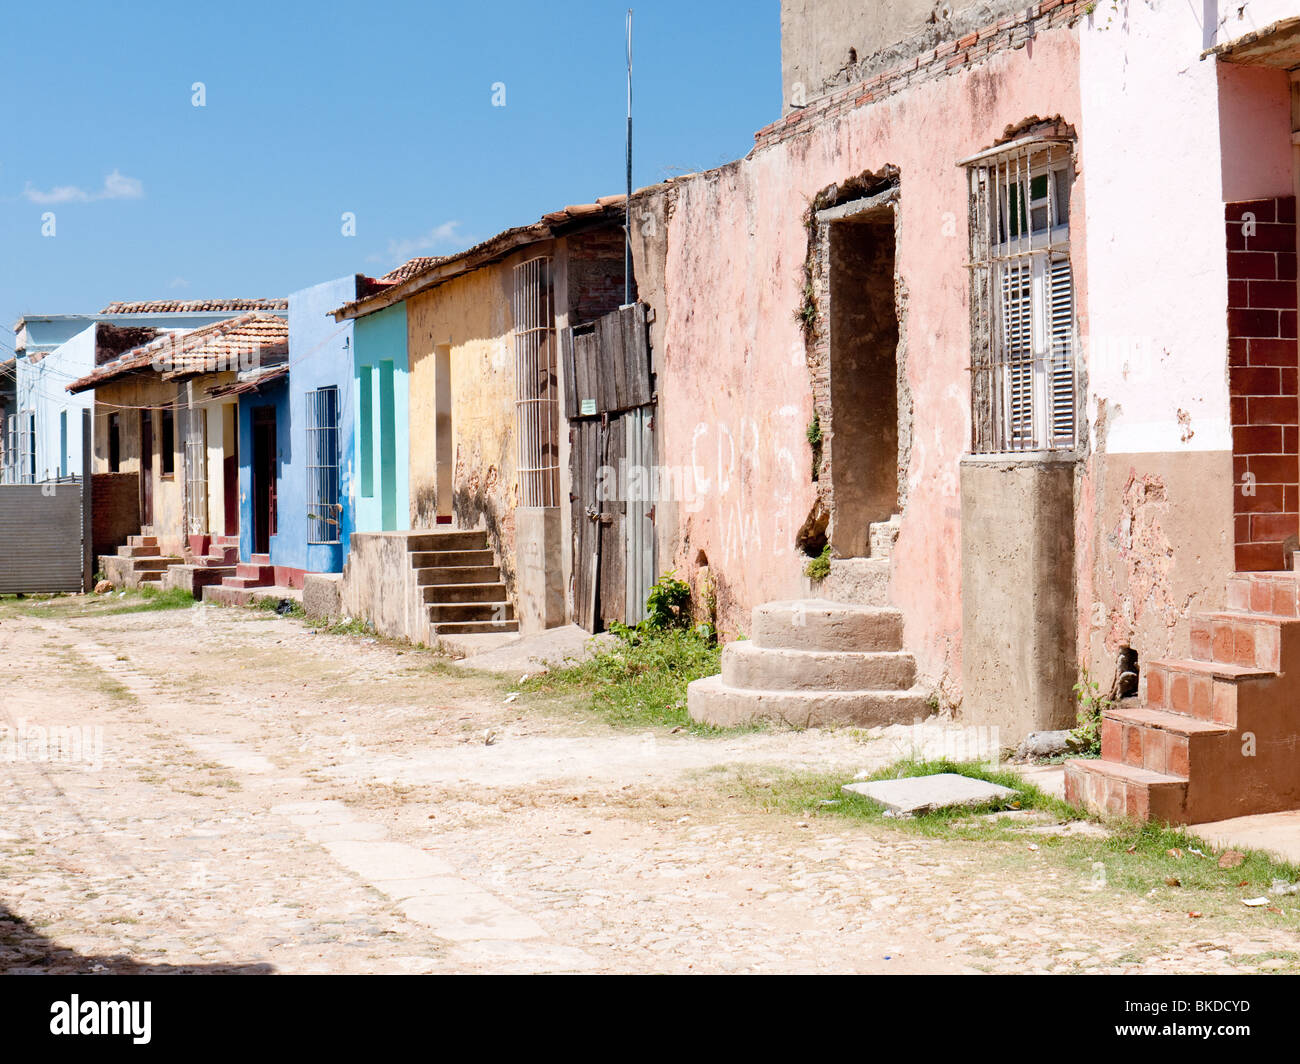 Escena callejera de antiguos edificios históricos en necesidad de reparación y restauración en Trinidad, Cuba Foto de stock